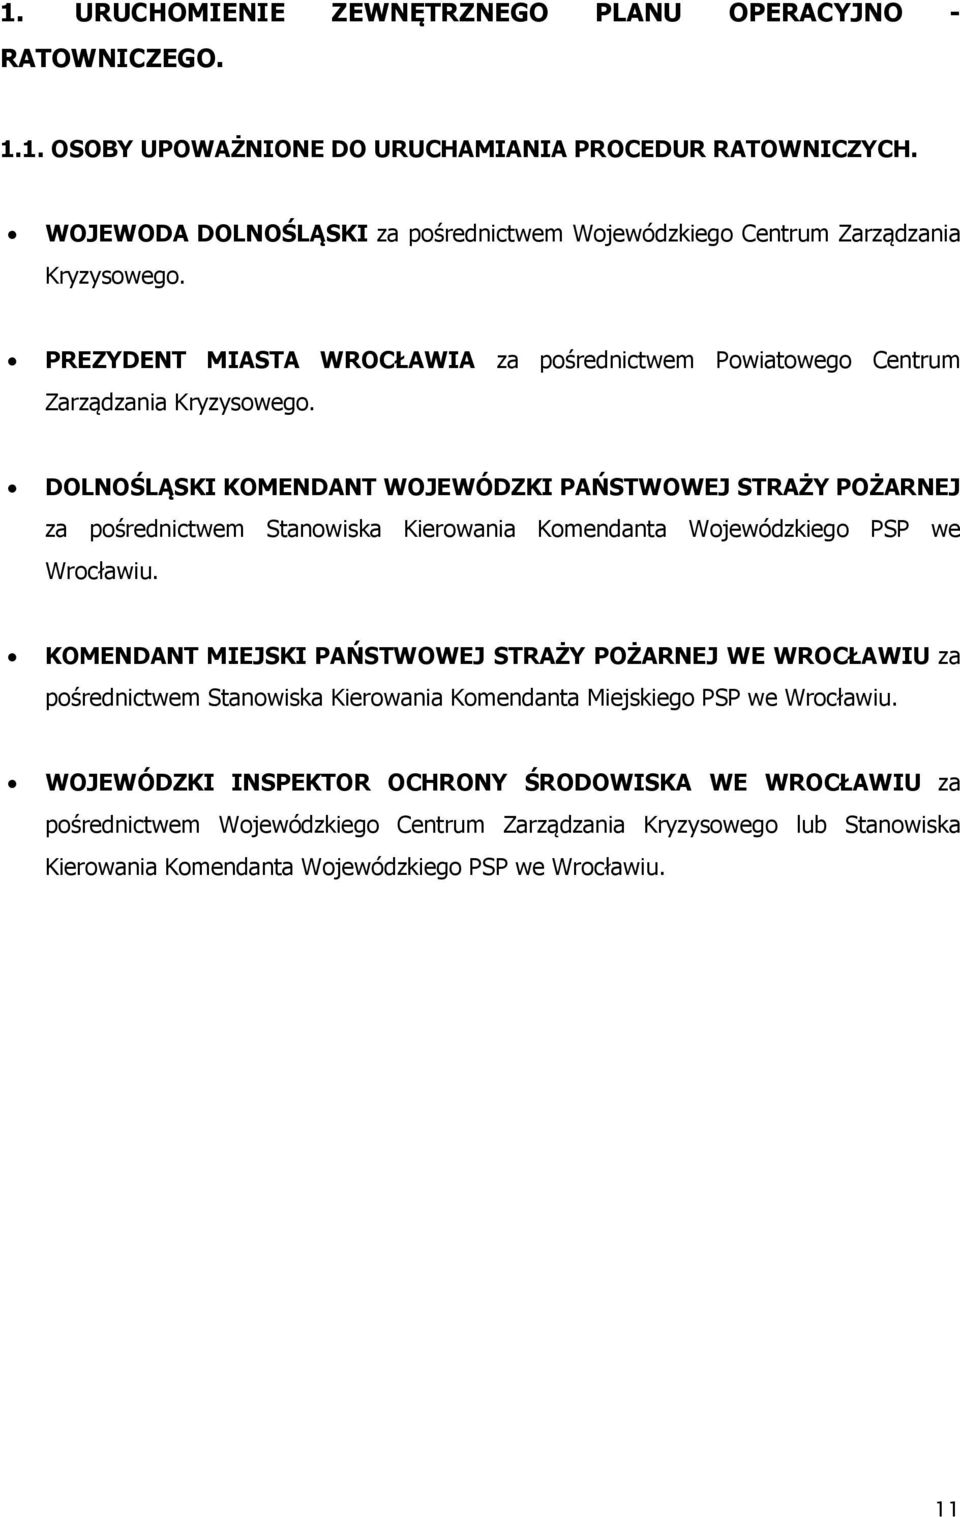 DOLNOŚLĄSKI KOMENDANT WOJEWÓDZKI PAŃSTWOWEJ STRAŻY POŻARNEJ za pośrednictwem Stanowiska Kierowania Komendanta Wojewódzkiego PSP we Wrocławiu.